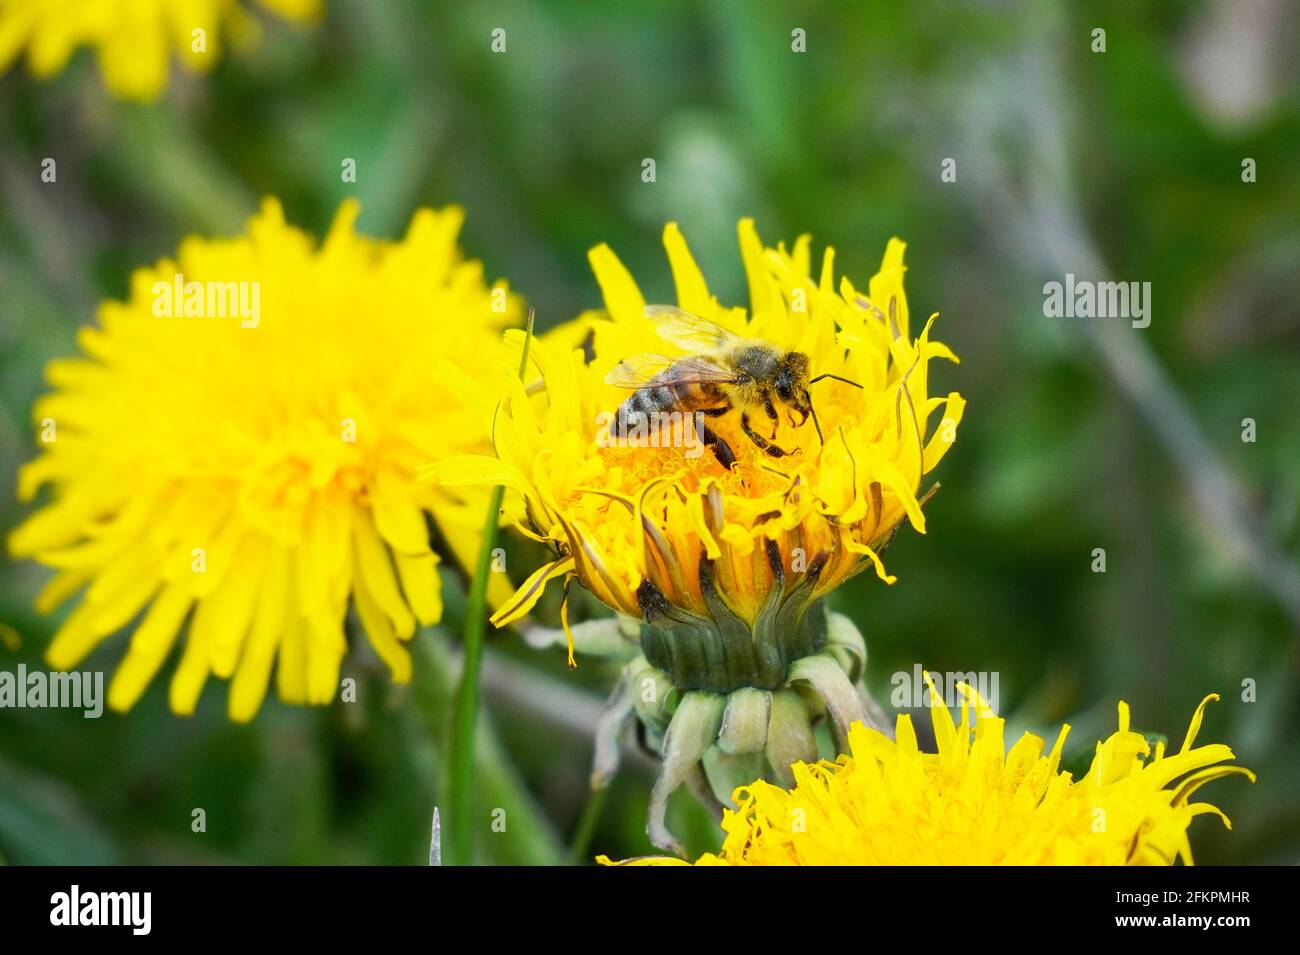 Die Biene sammelt Nektar und Pollen auf einer gelben Dandelionenblume. Insekten mit Flügeln. APIs mellifera. Grüner Hintergrund einer Wiese. Stockfoto